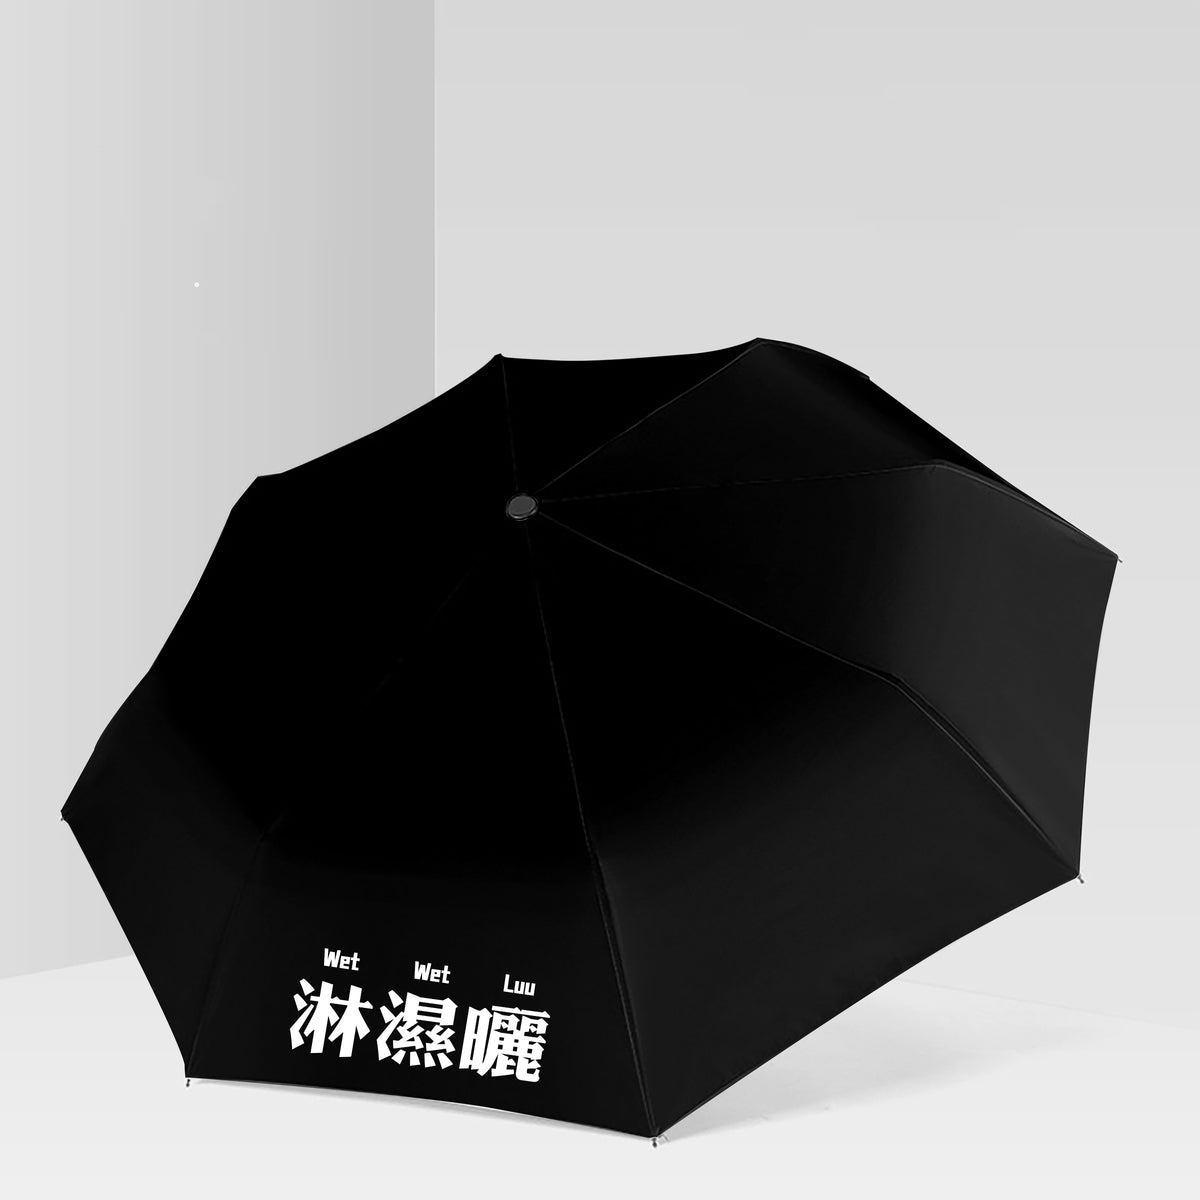 【我們都愛廣東話】淋濕曬雨傘 廣東話晴雨傘  雨傘禮物定制